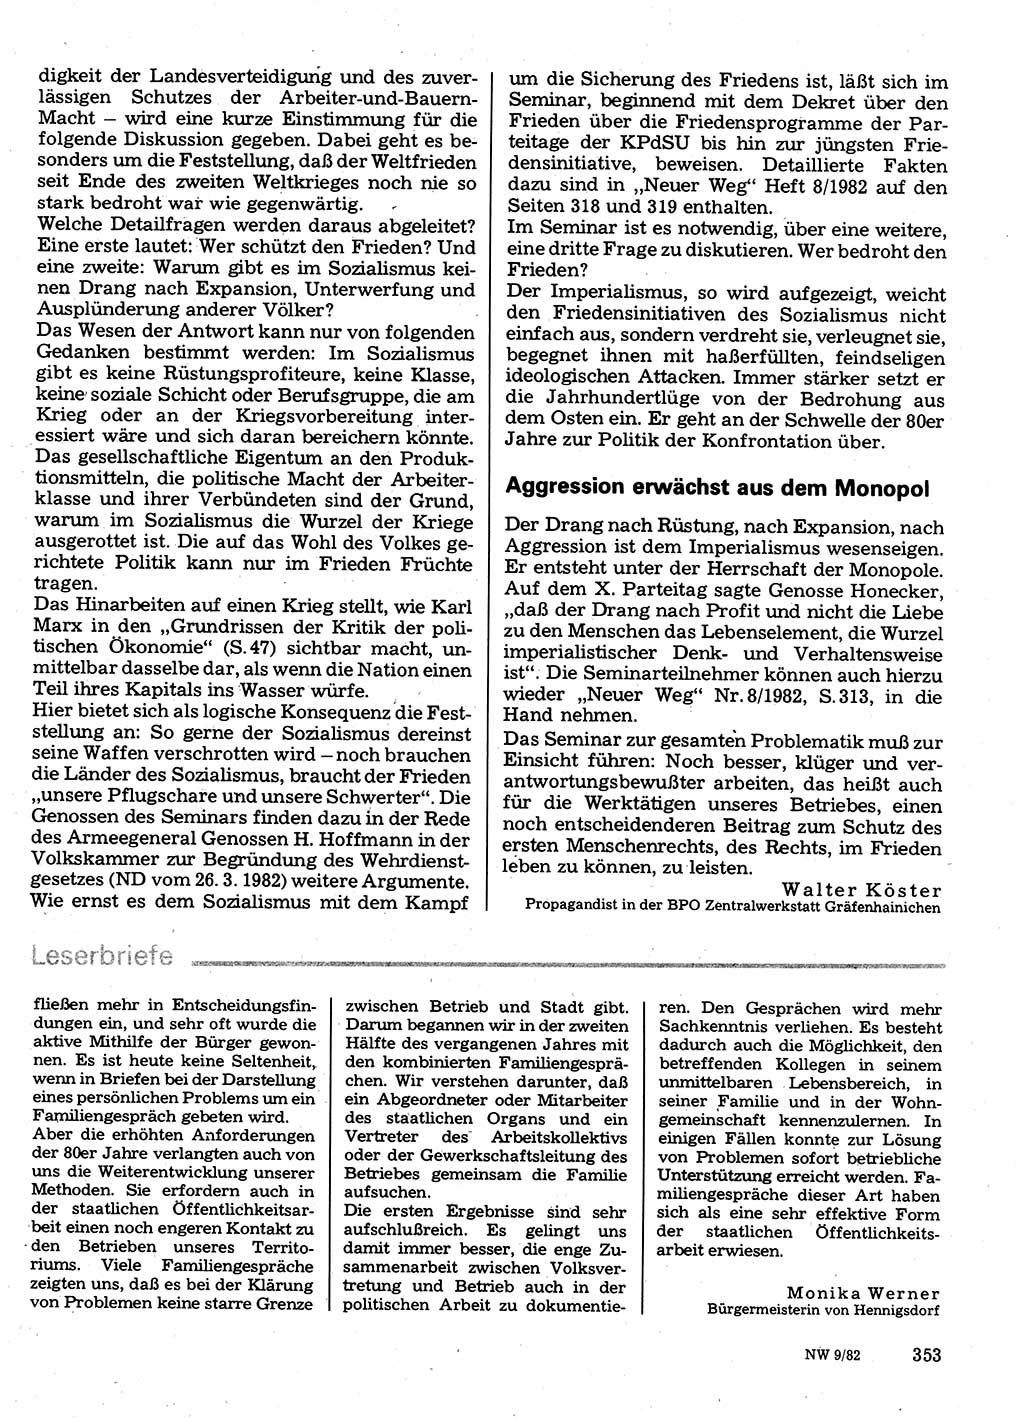 Neuer Weg (NW), Organ des Zentralkomitees (ZK) der SED (Sozialistische Einheitspartei Deutschlands) für Fragen des Parteilebens, 37. Jahrgang [Deutsche Demokratische Republik (DDR)] 1982, Seite 353 (NW ZK SED DDR 1982, S. 353)